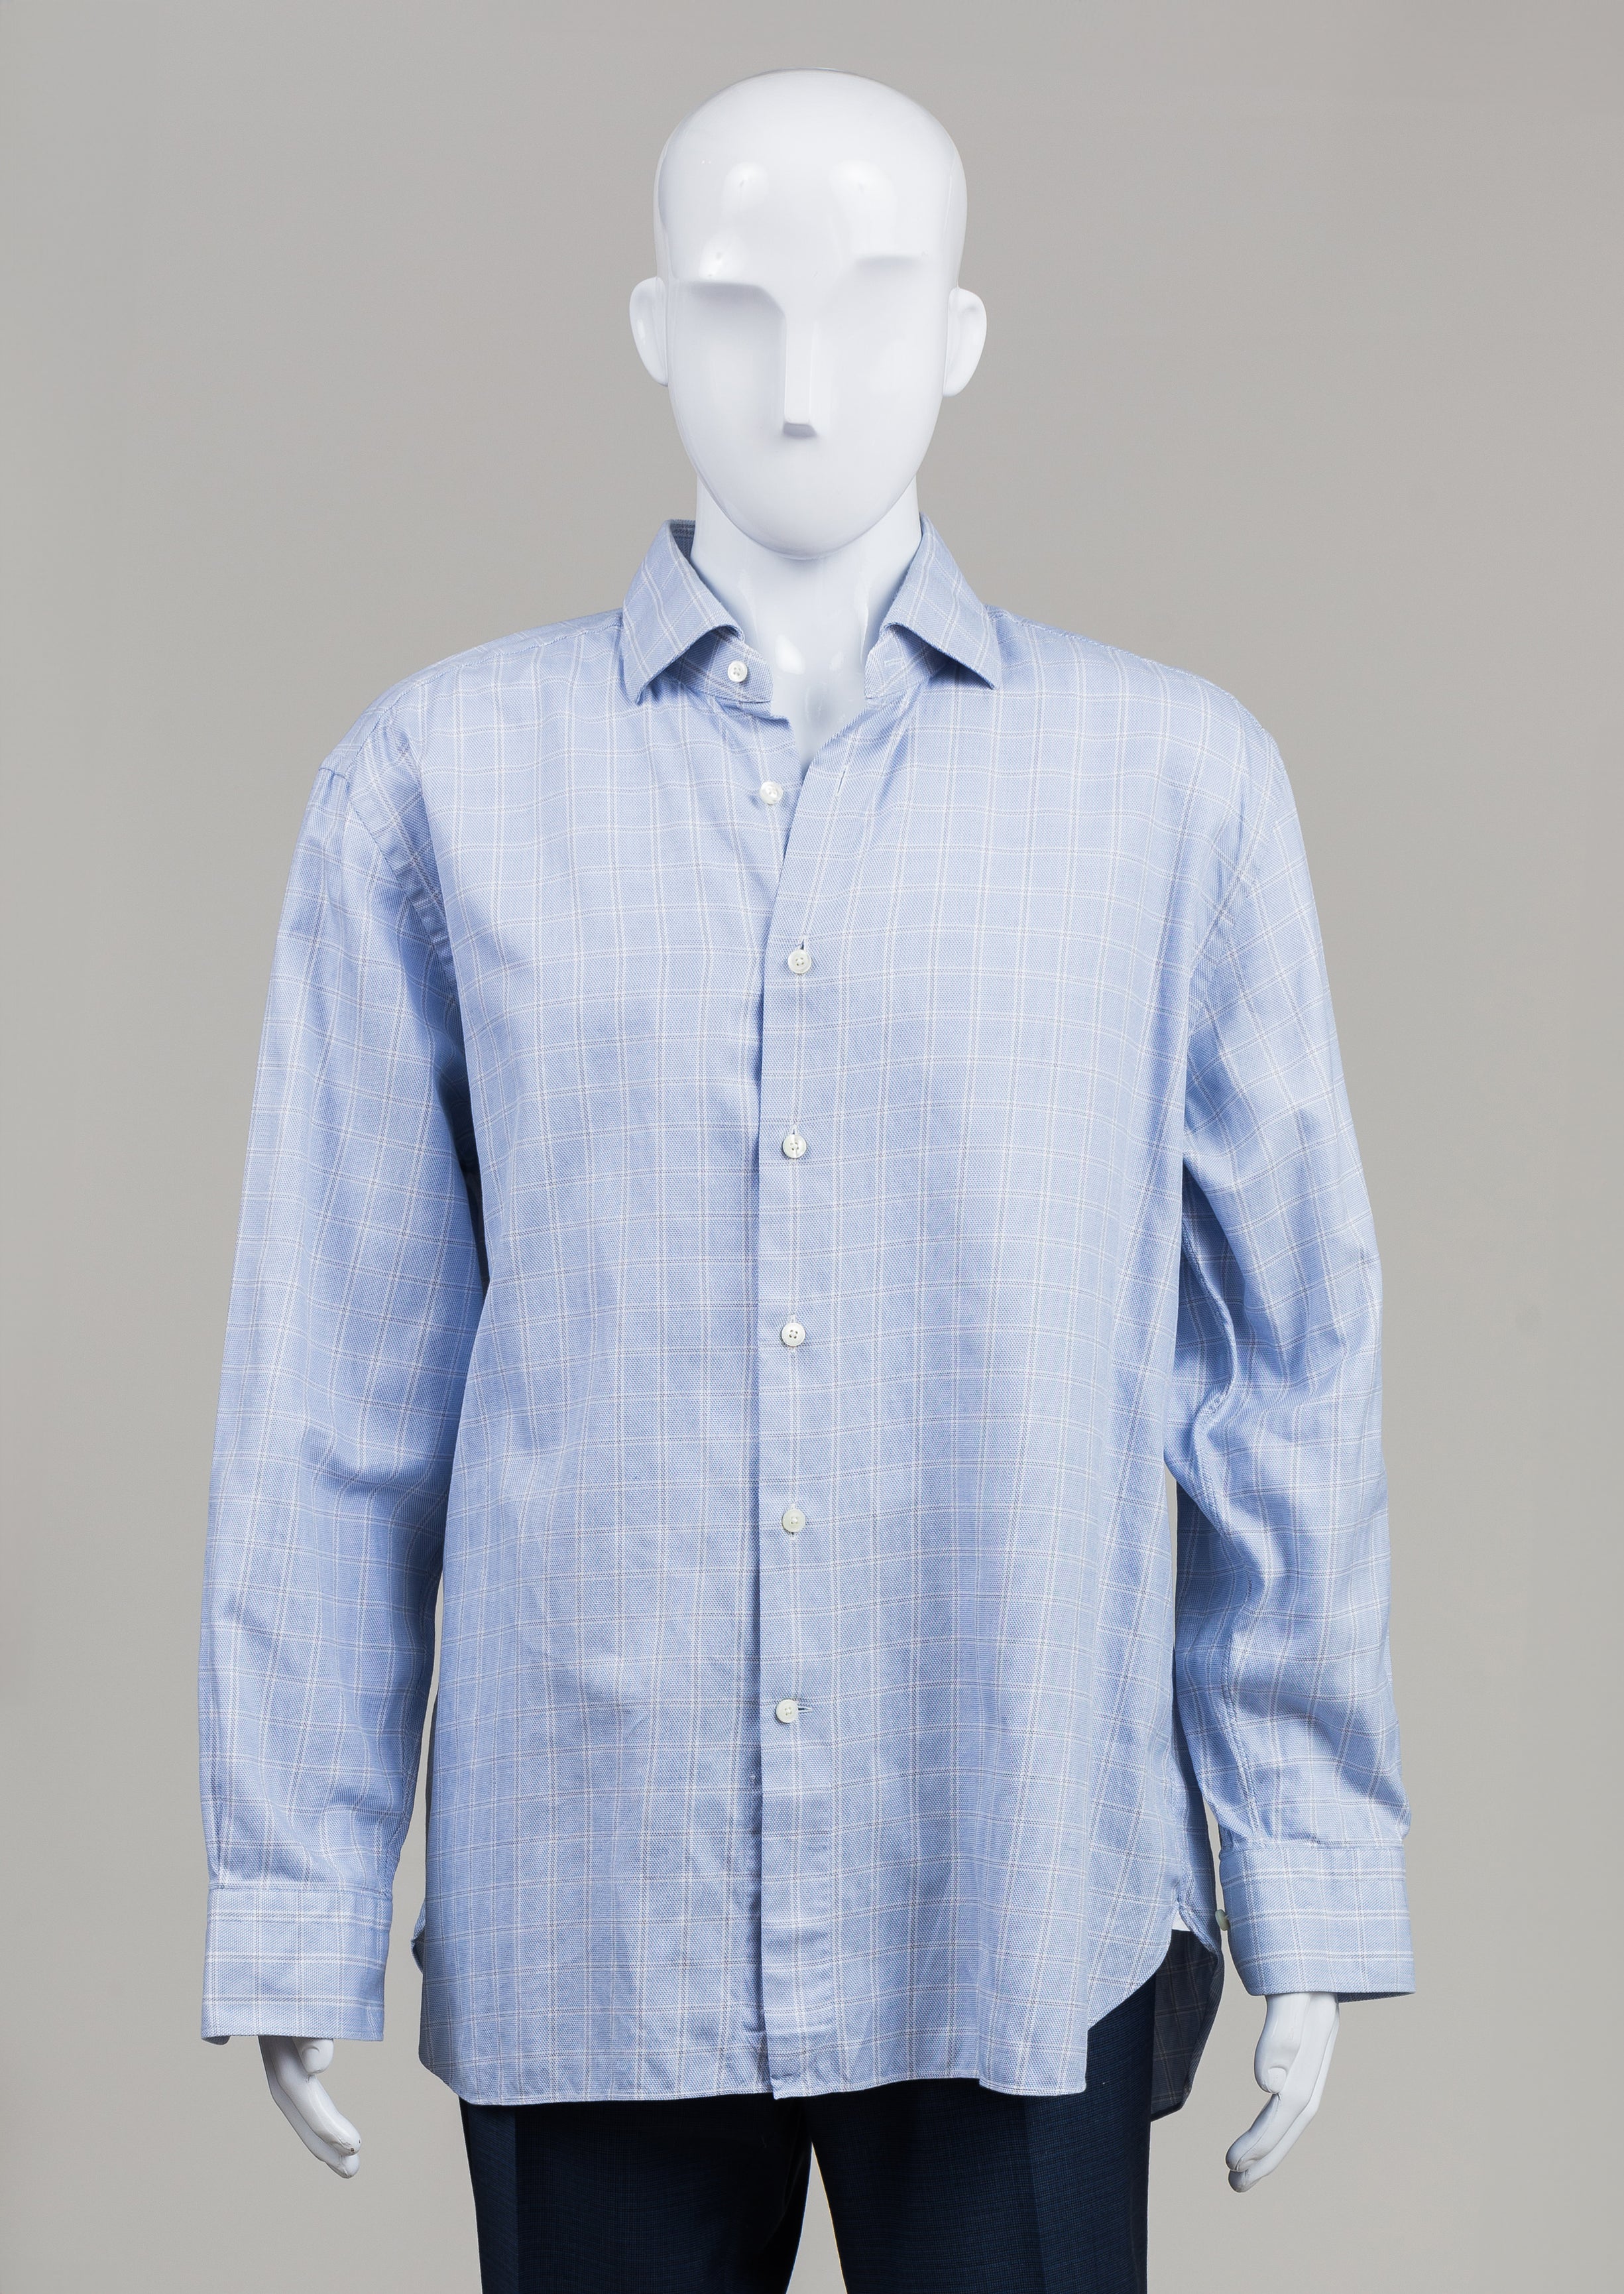 Ermenegildo Zegna Light Blue Plaid Shirt (18 1/2)